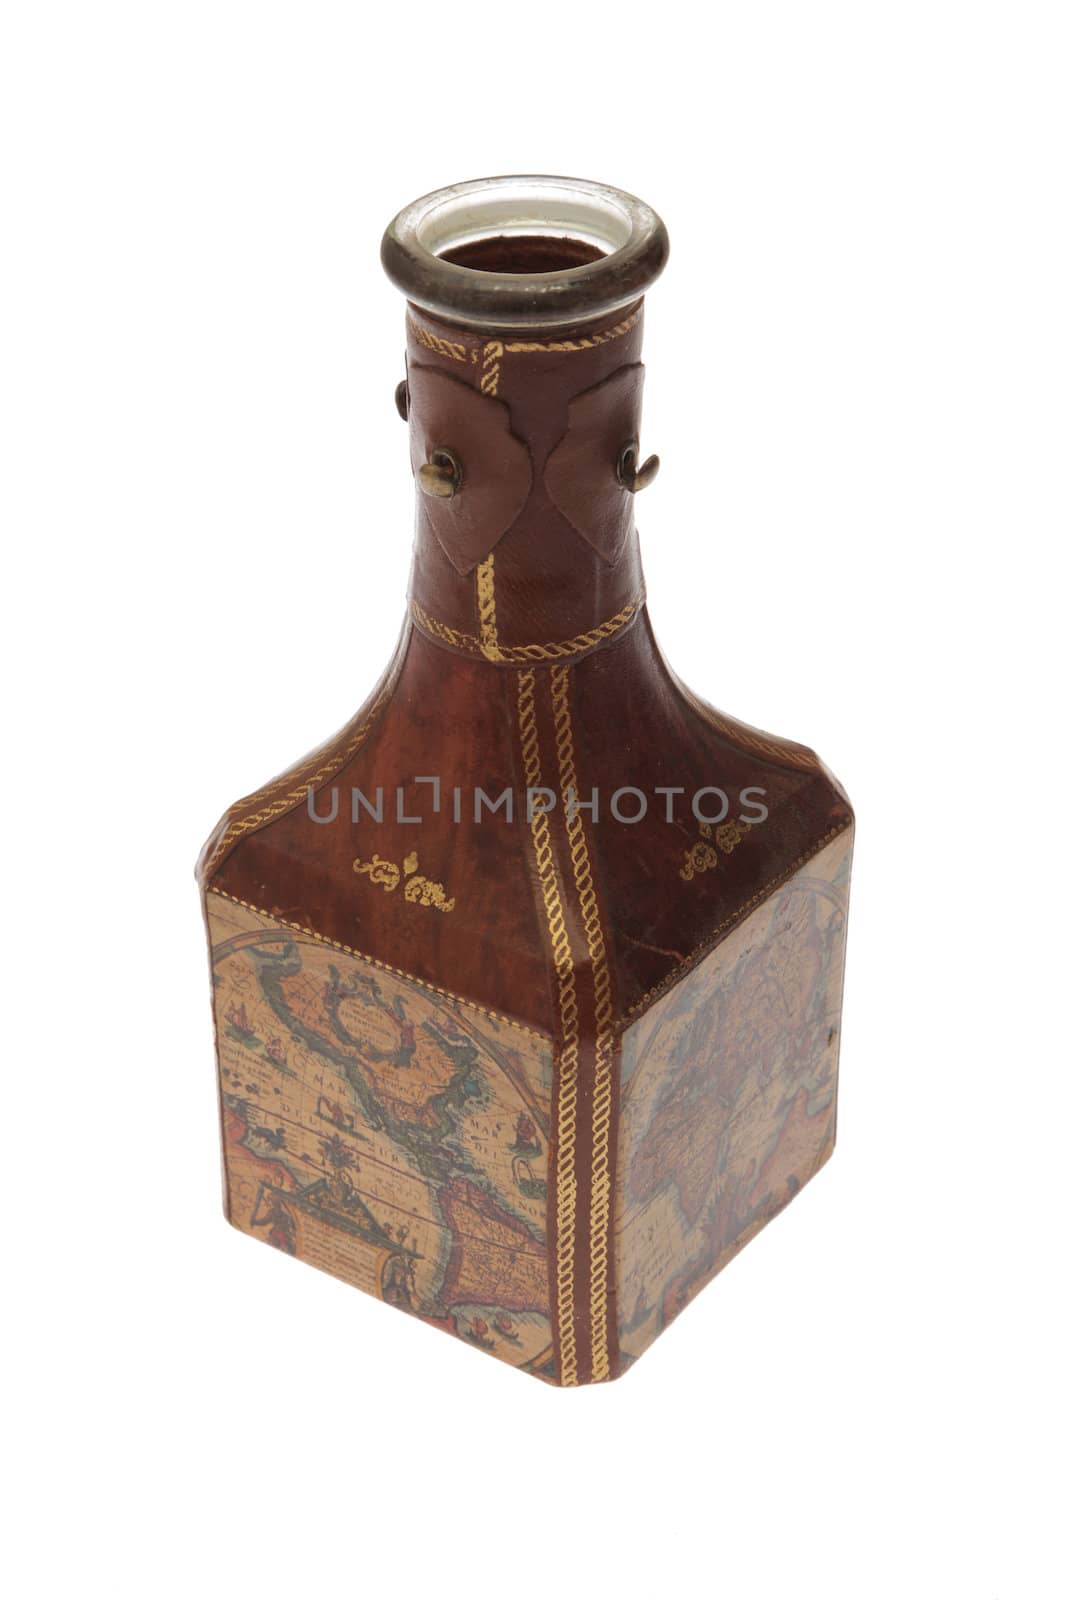 Explorer's liquor bottle 